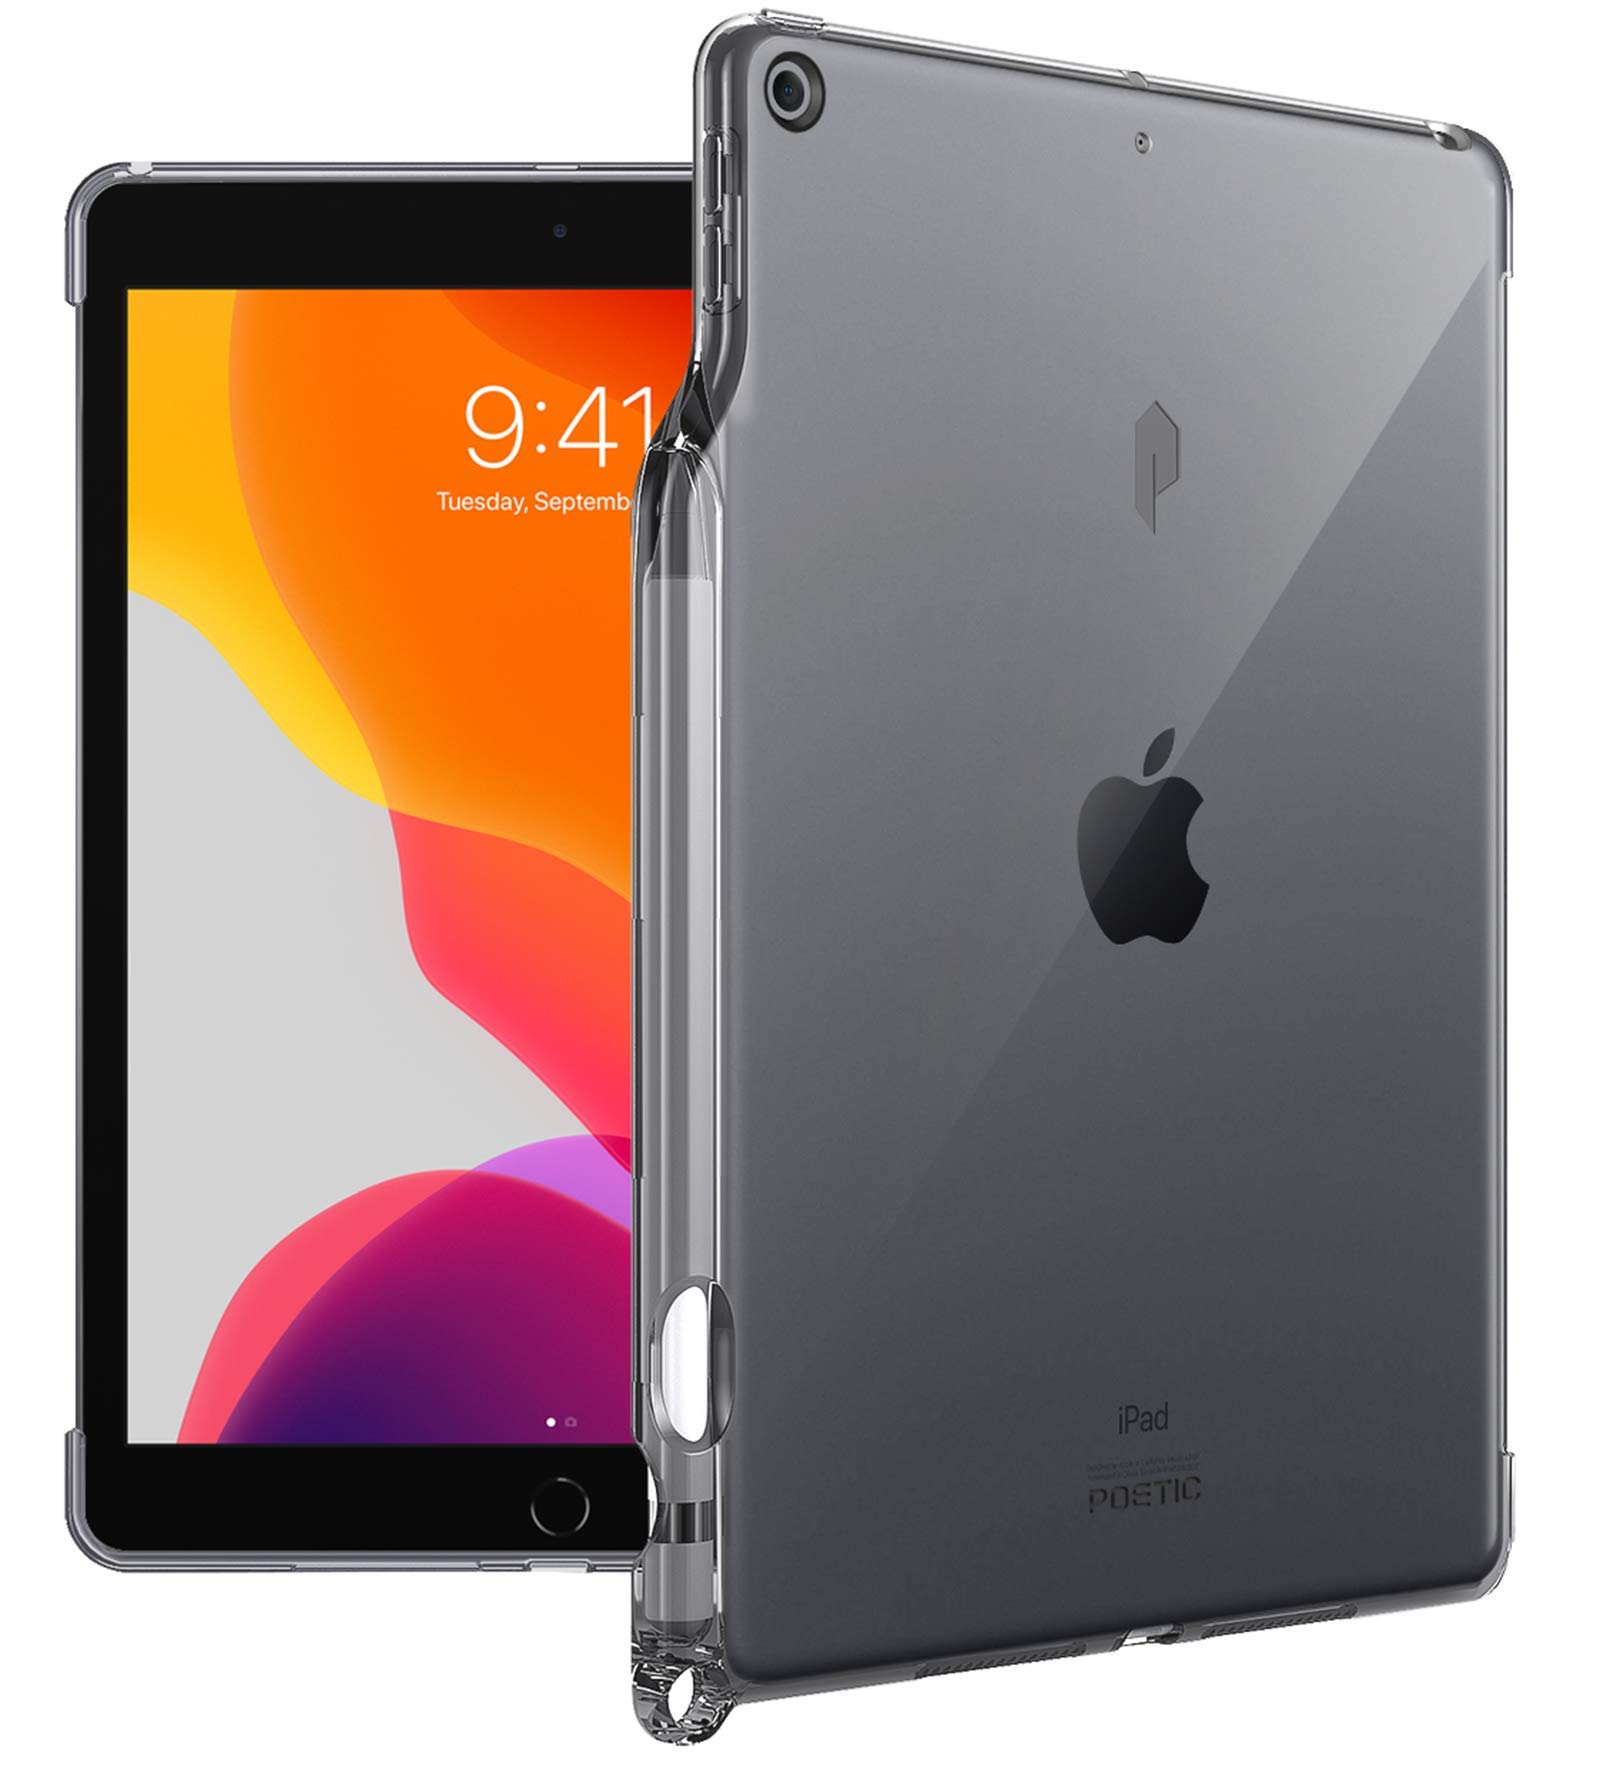 POETIC Lumos Flexibel Wiche Durchsichtig Ultra Dünn Schlagfest TPU Hülle für Apple iPad 10.2 inch 7th Gen 2019 Durchsichtig Grau